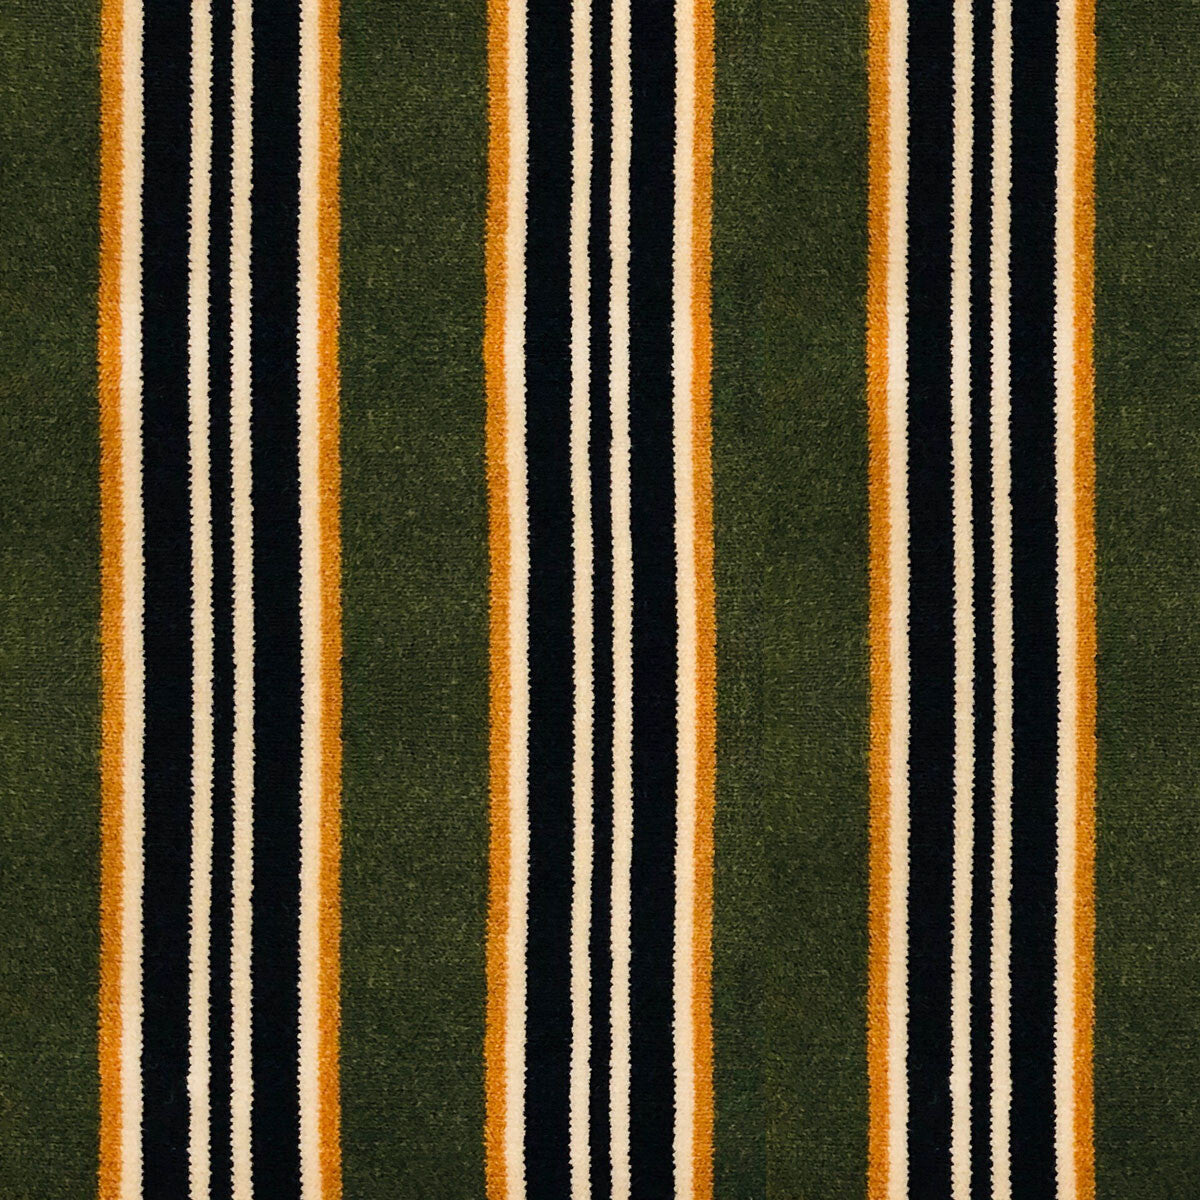 Tucha fabric in fondo verde/oro color - pattern LCT1051.004.0 - by Gaston y Daniela in the Lorenzo Castillo VI collection